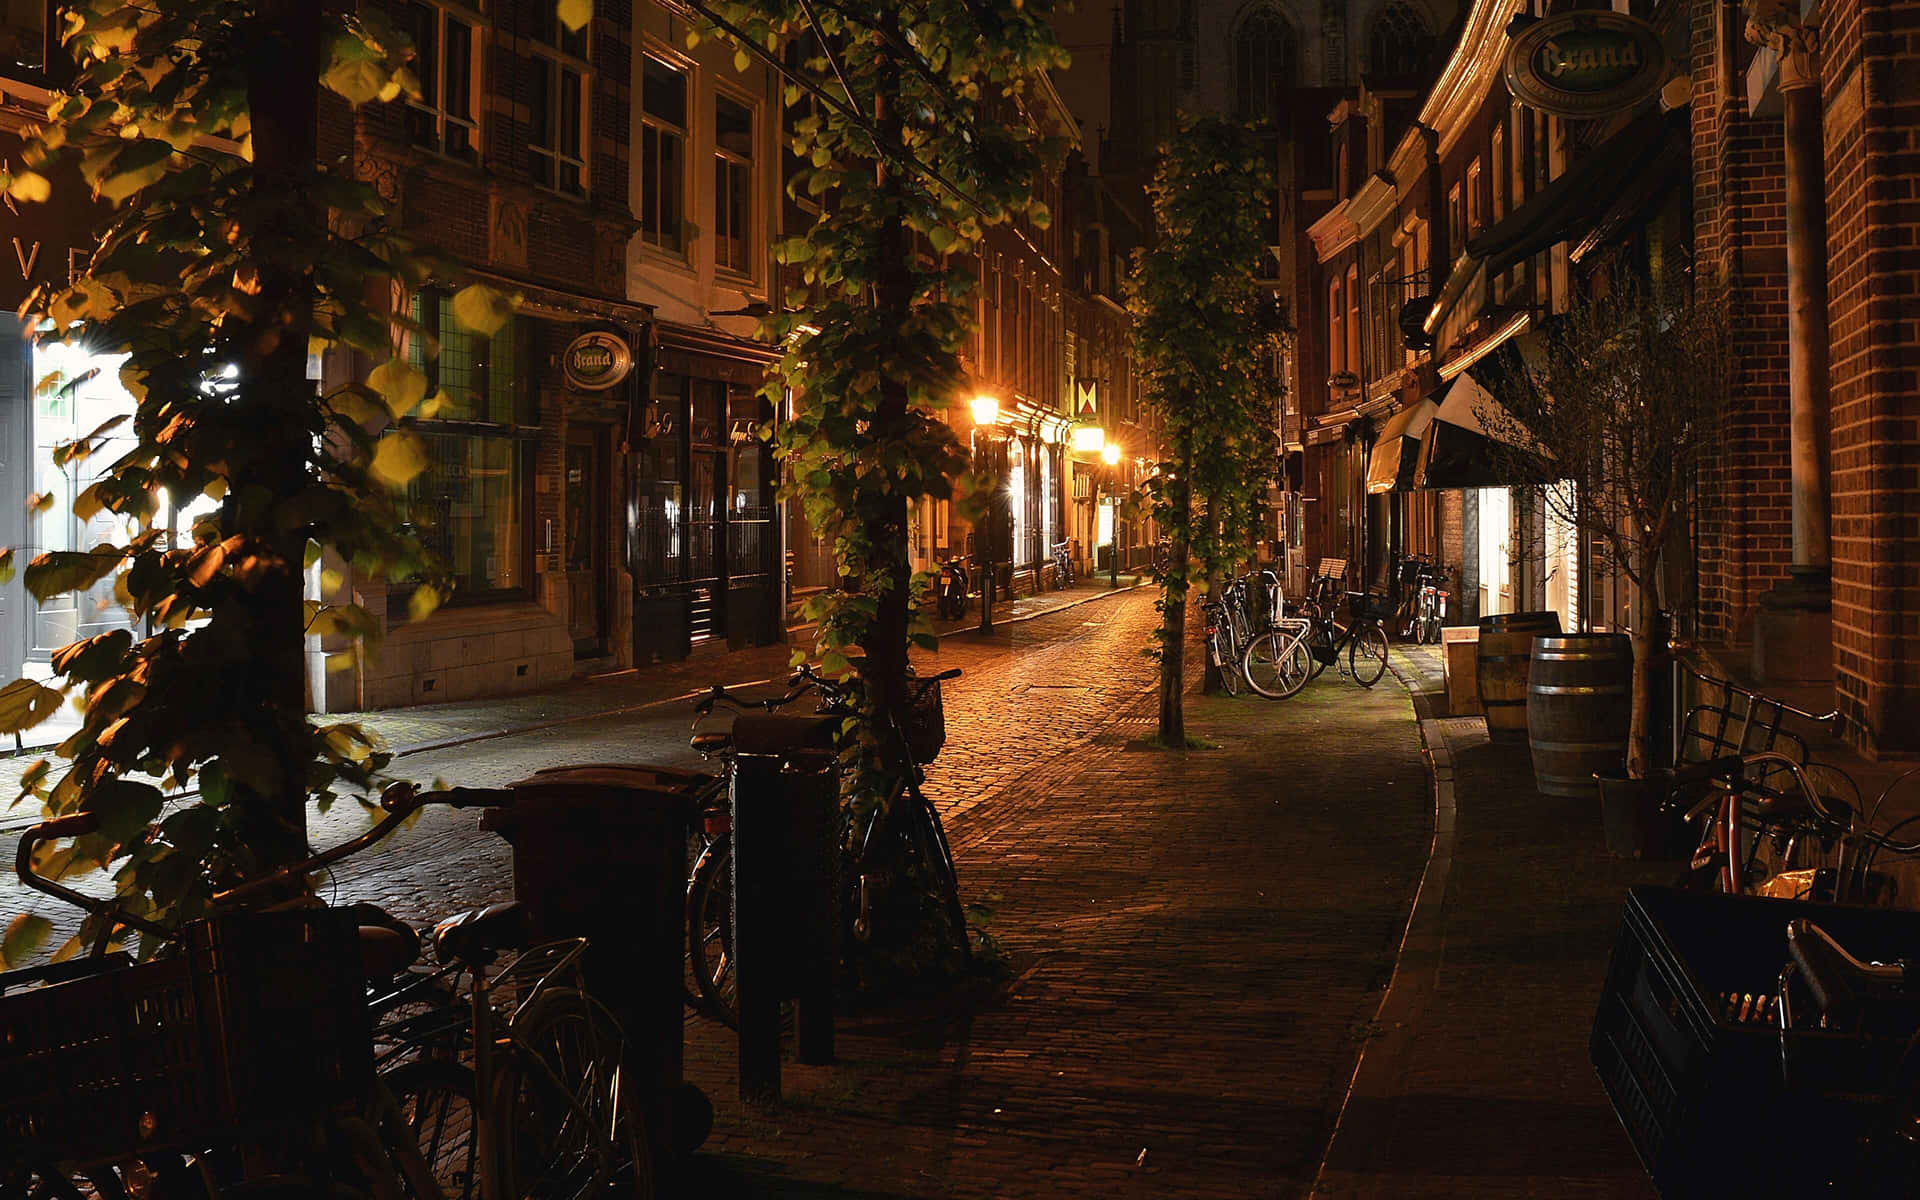 Haarlem Netherlands Night Street Scene Wallpaper